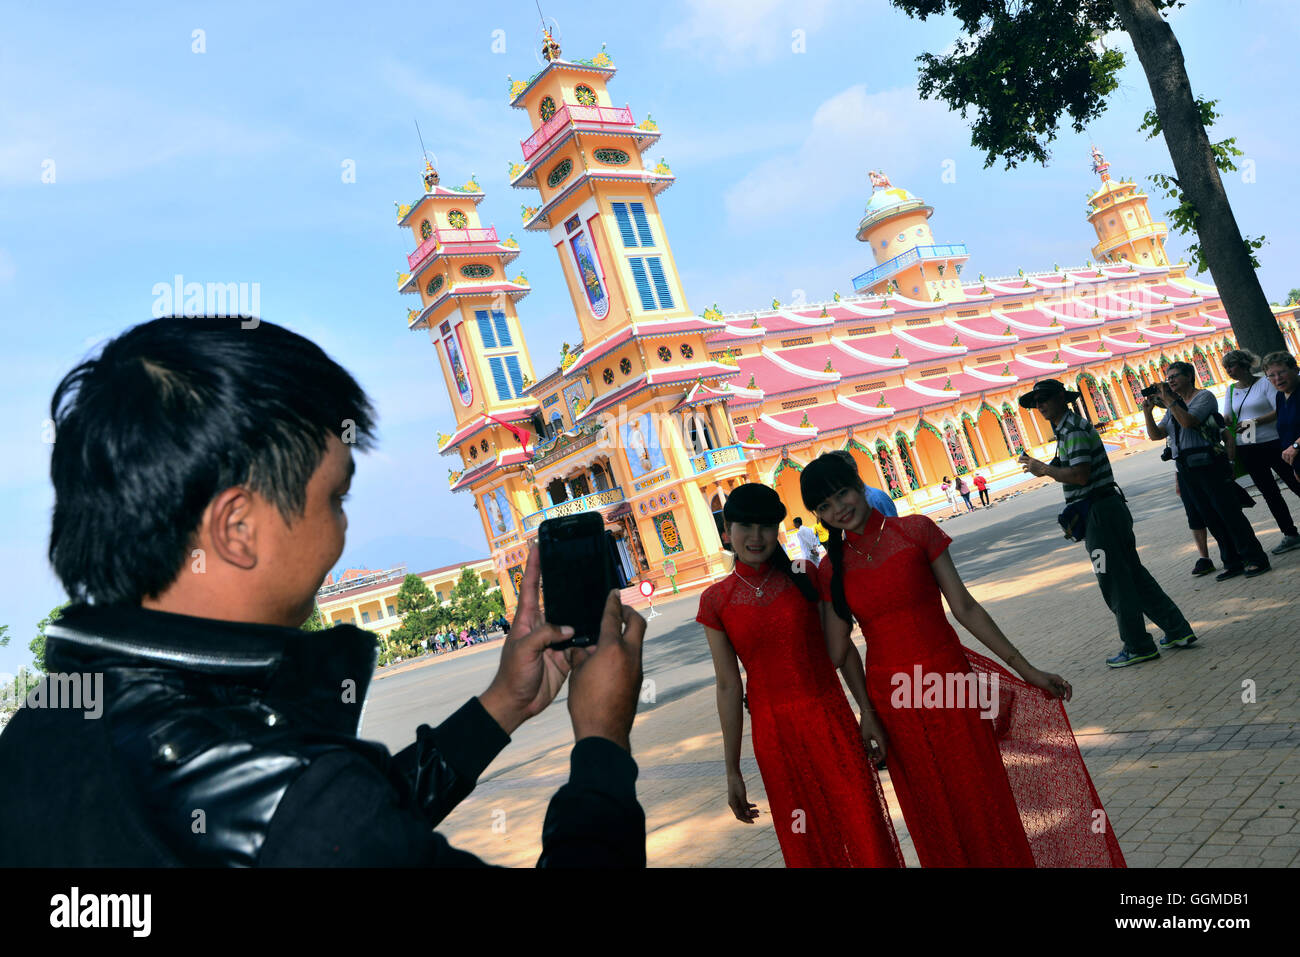 L'homme prenez des photos sur la cathédrale de Tay Ninh, Vietnam, Asie Banque D'Images